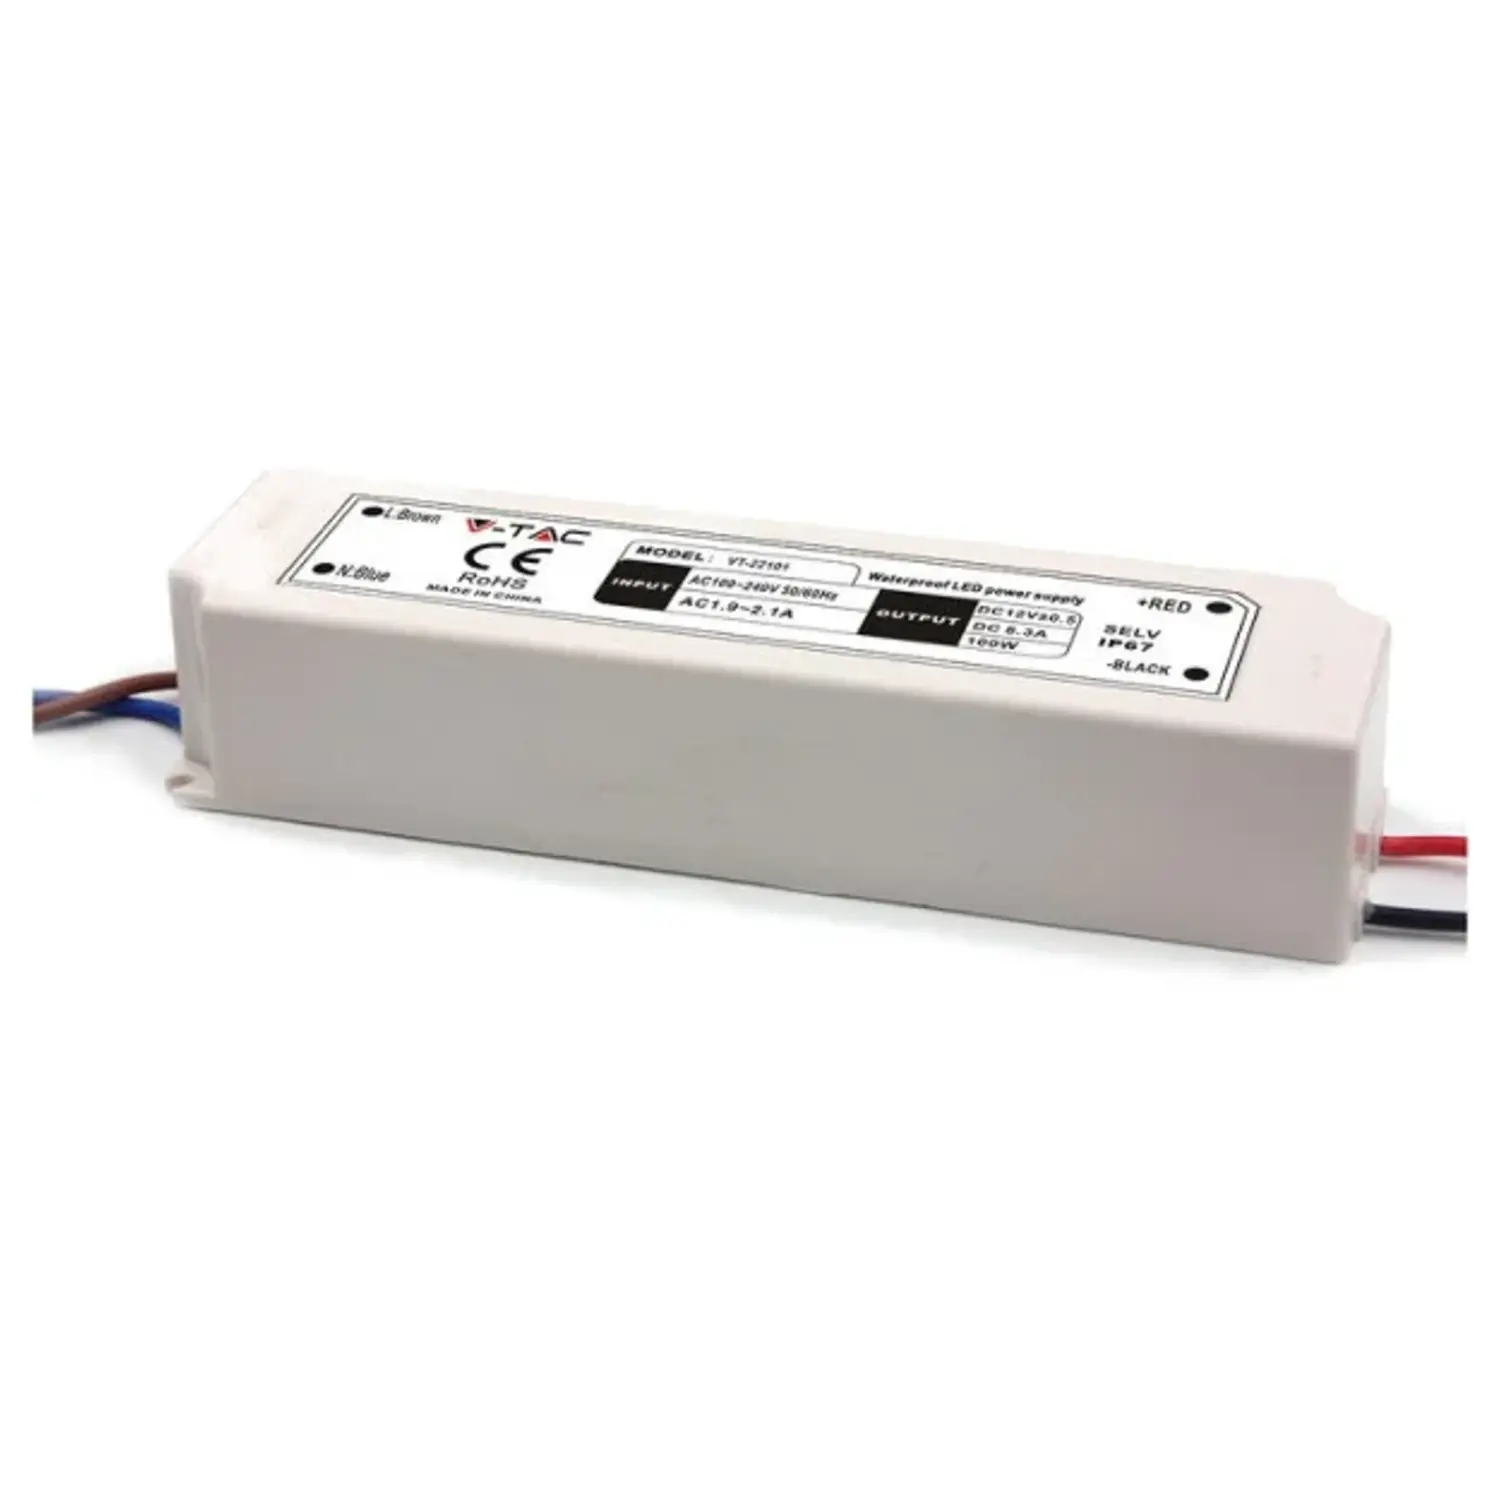 immagine del prodotto alimentatore led trasformatore in plastica stagno 150 watt 12 volt ip67 pro